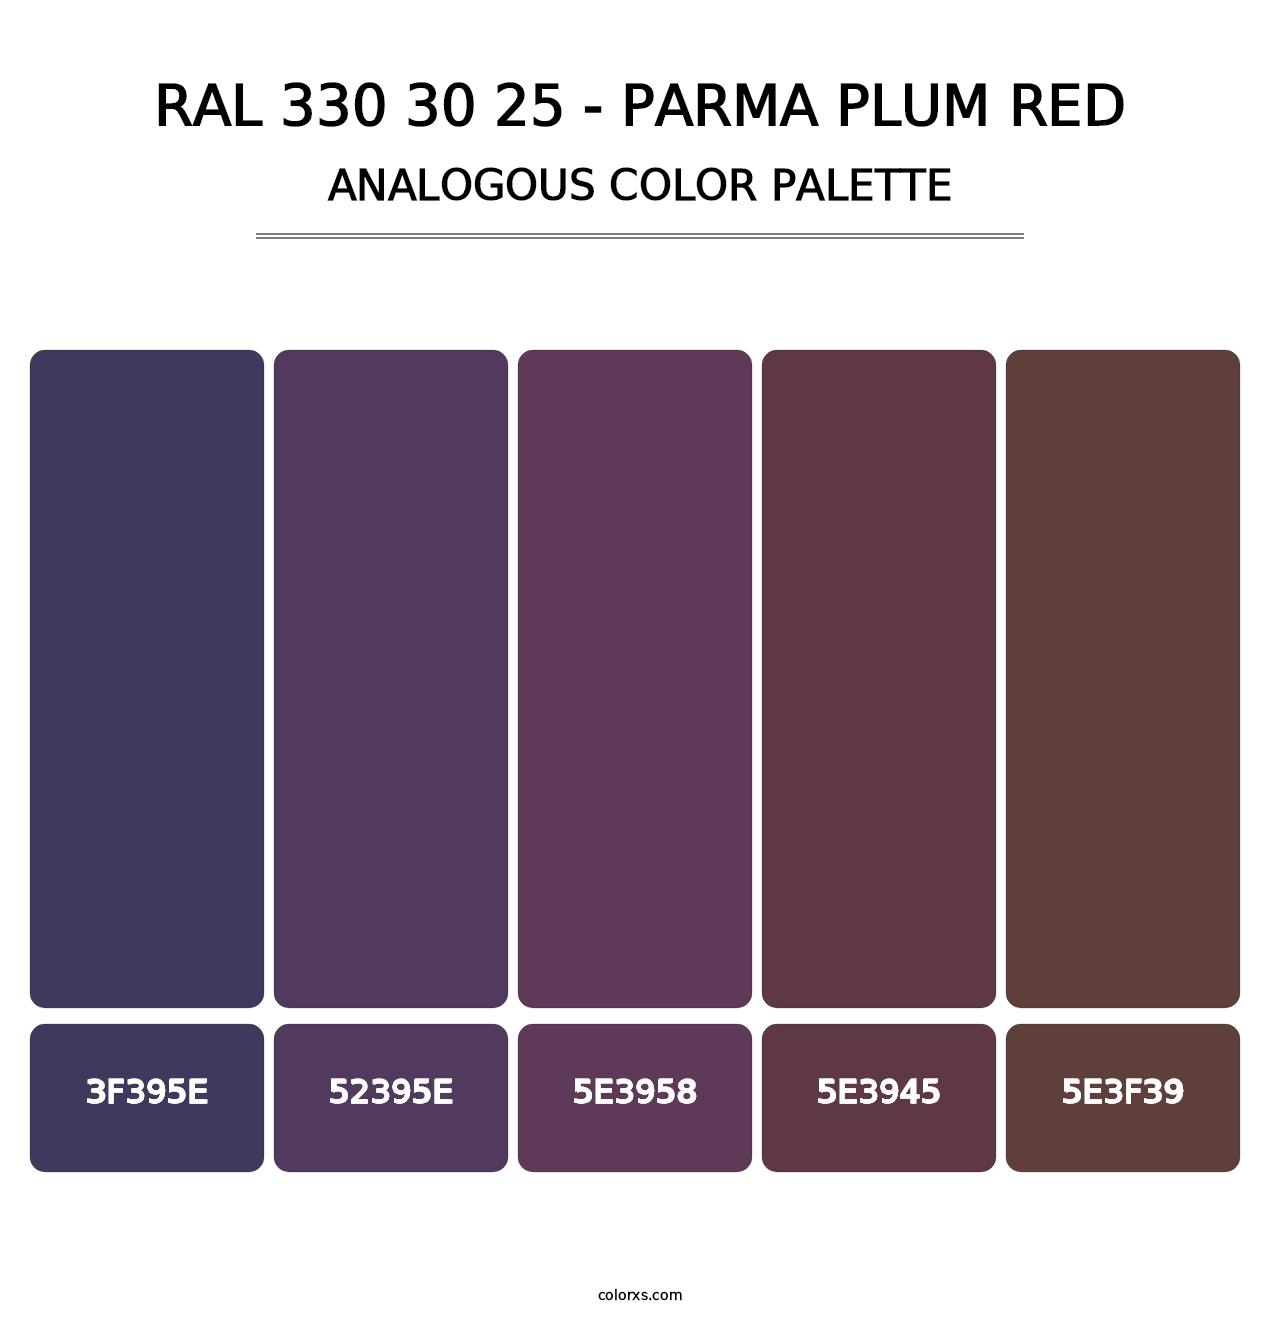 RAL 330 30 25 - Parma Plum Red - Analogous Color Palette